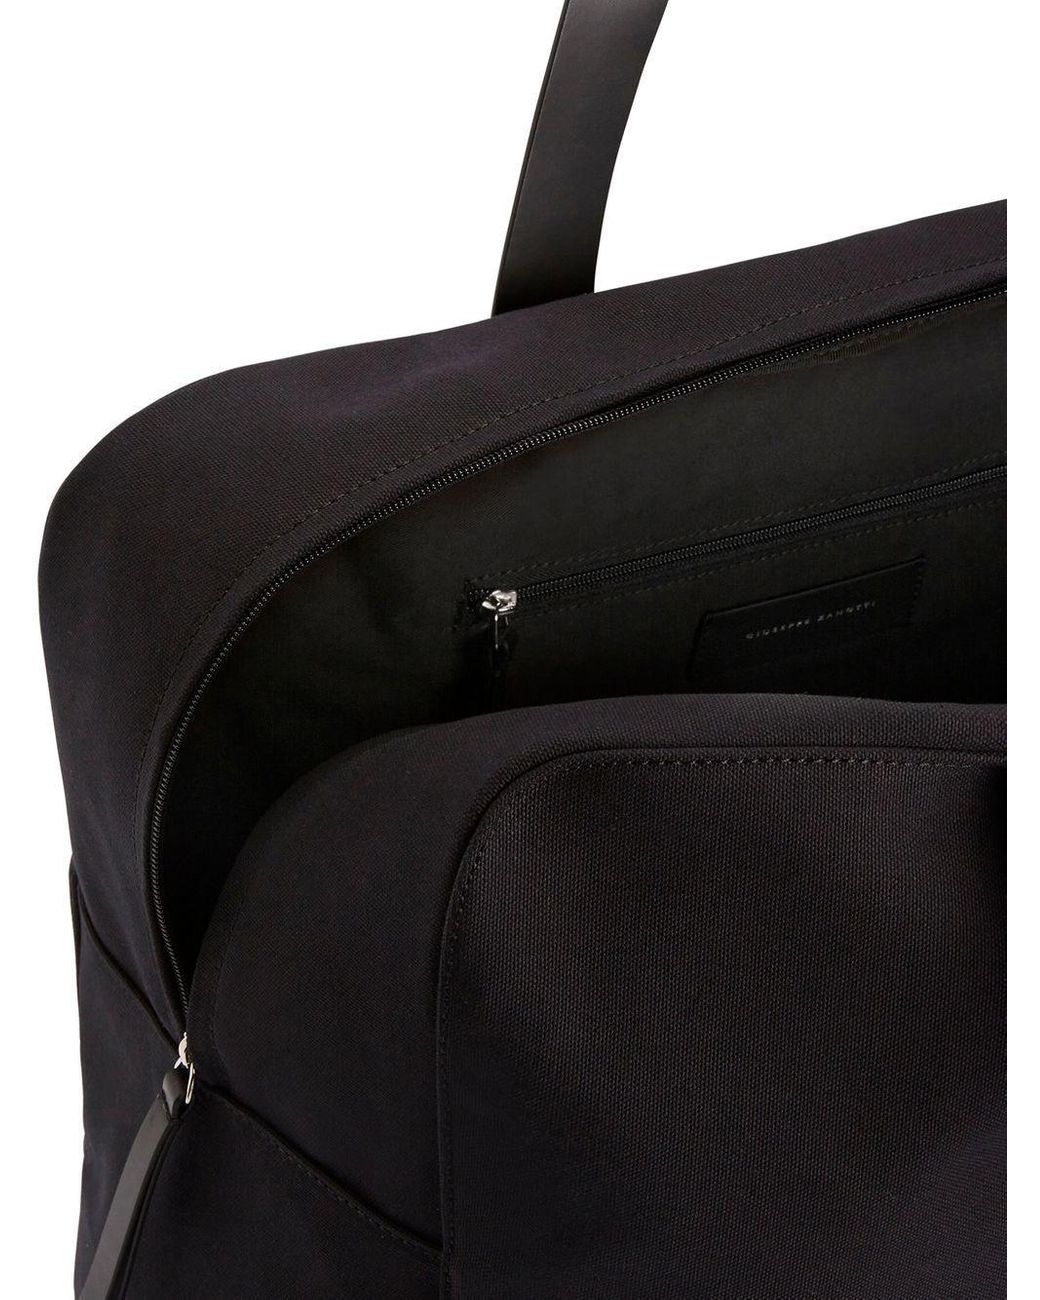 ユーティリ】 GIUSEPPE ZANOTTI Bag 黒 トートバッグ ・デザイン - www